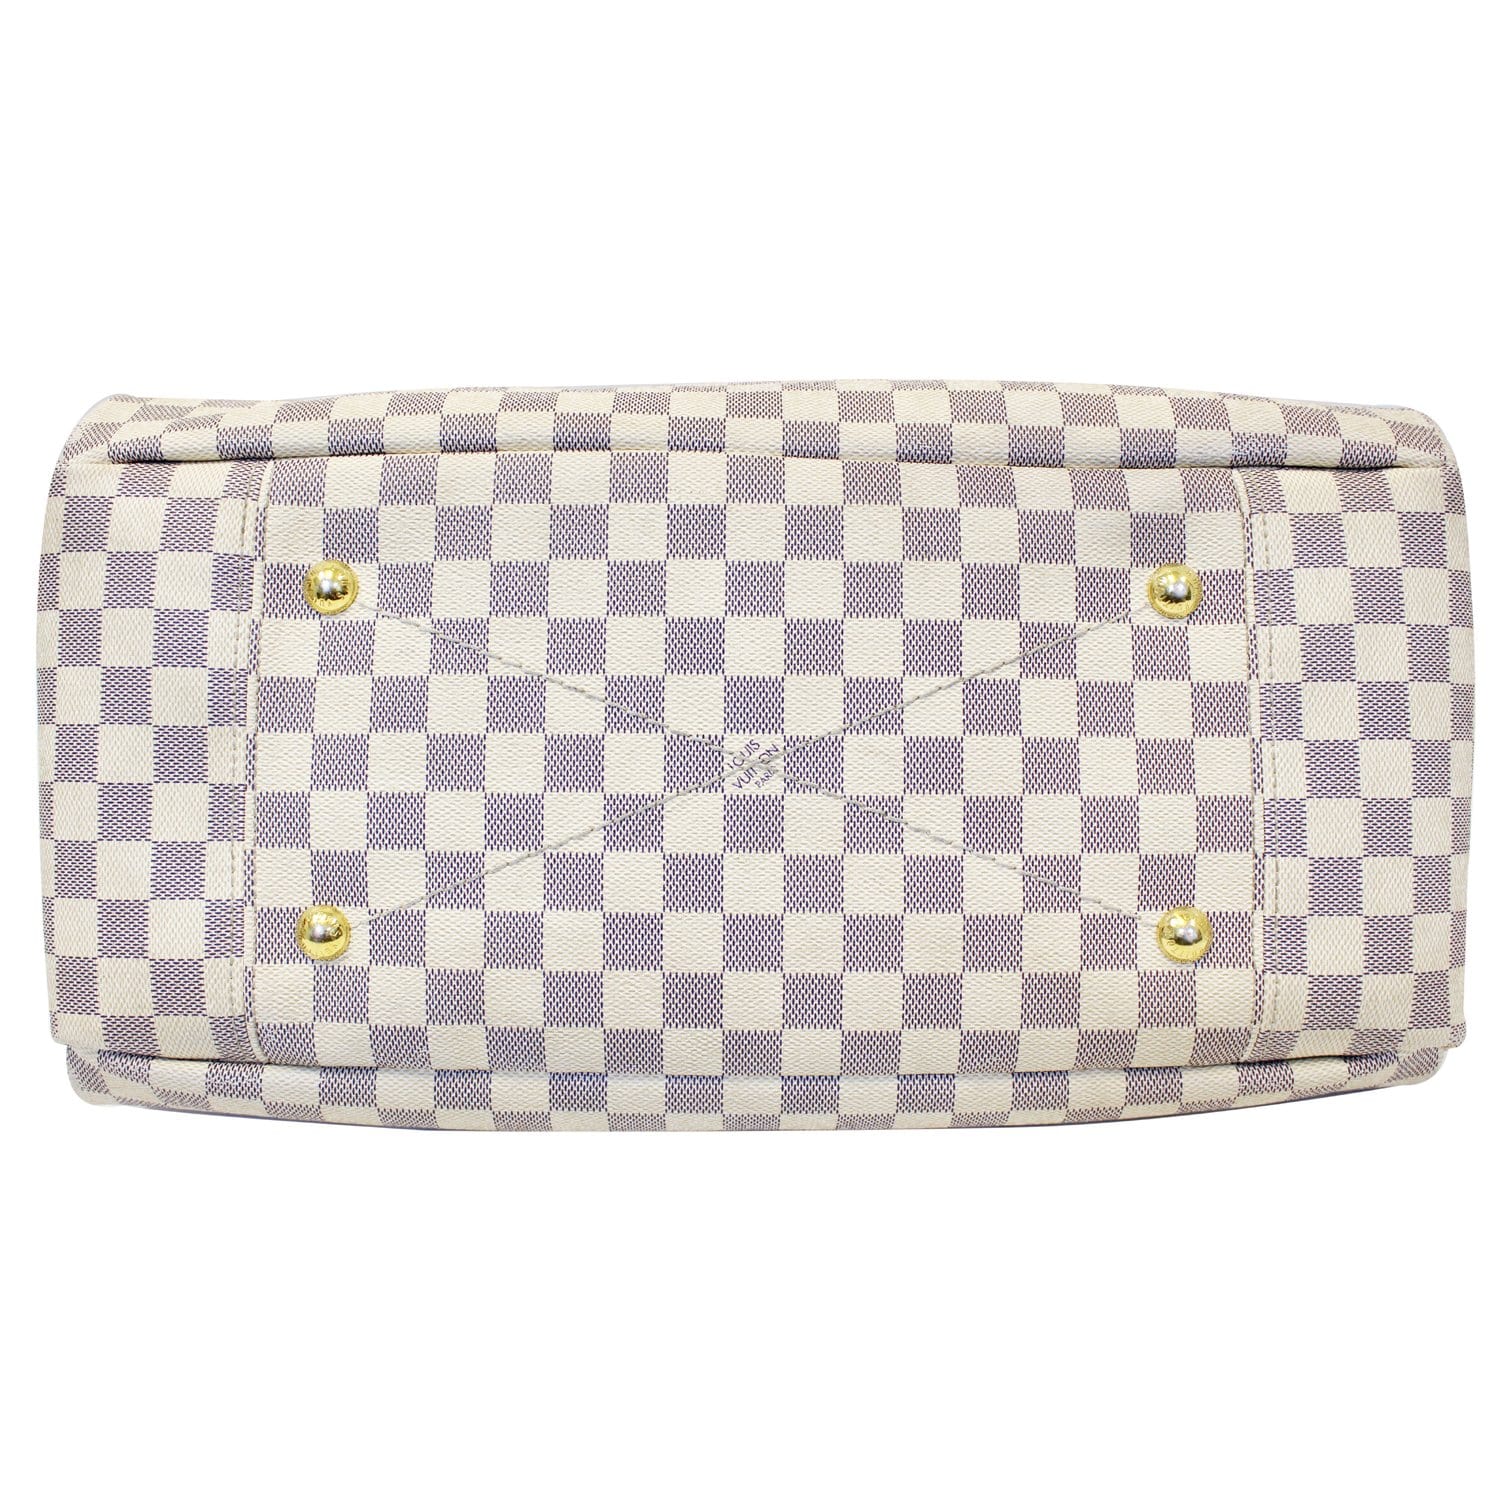 Buy LV Women White Handbag Damier Azur Online @ Best Price in